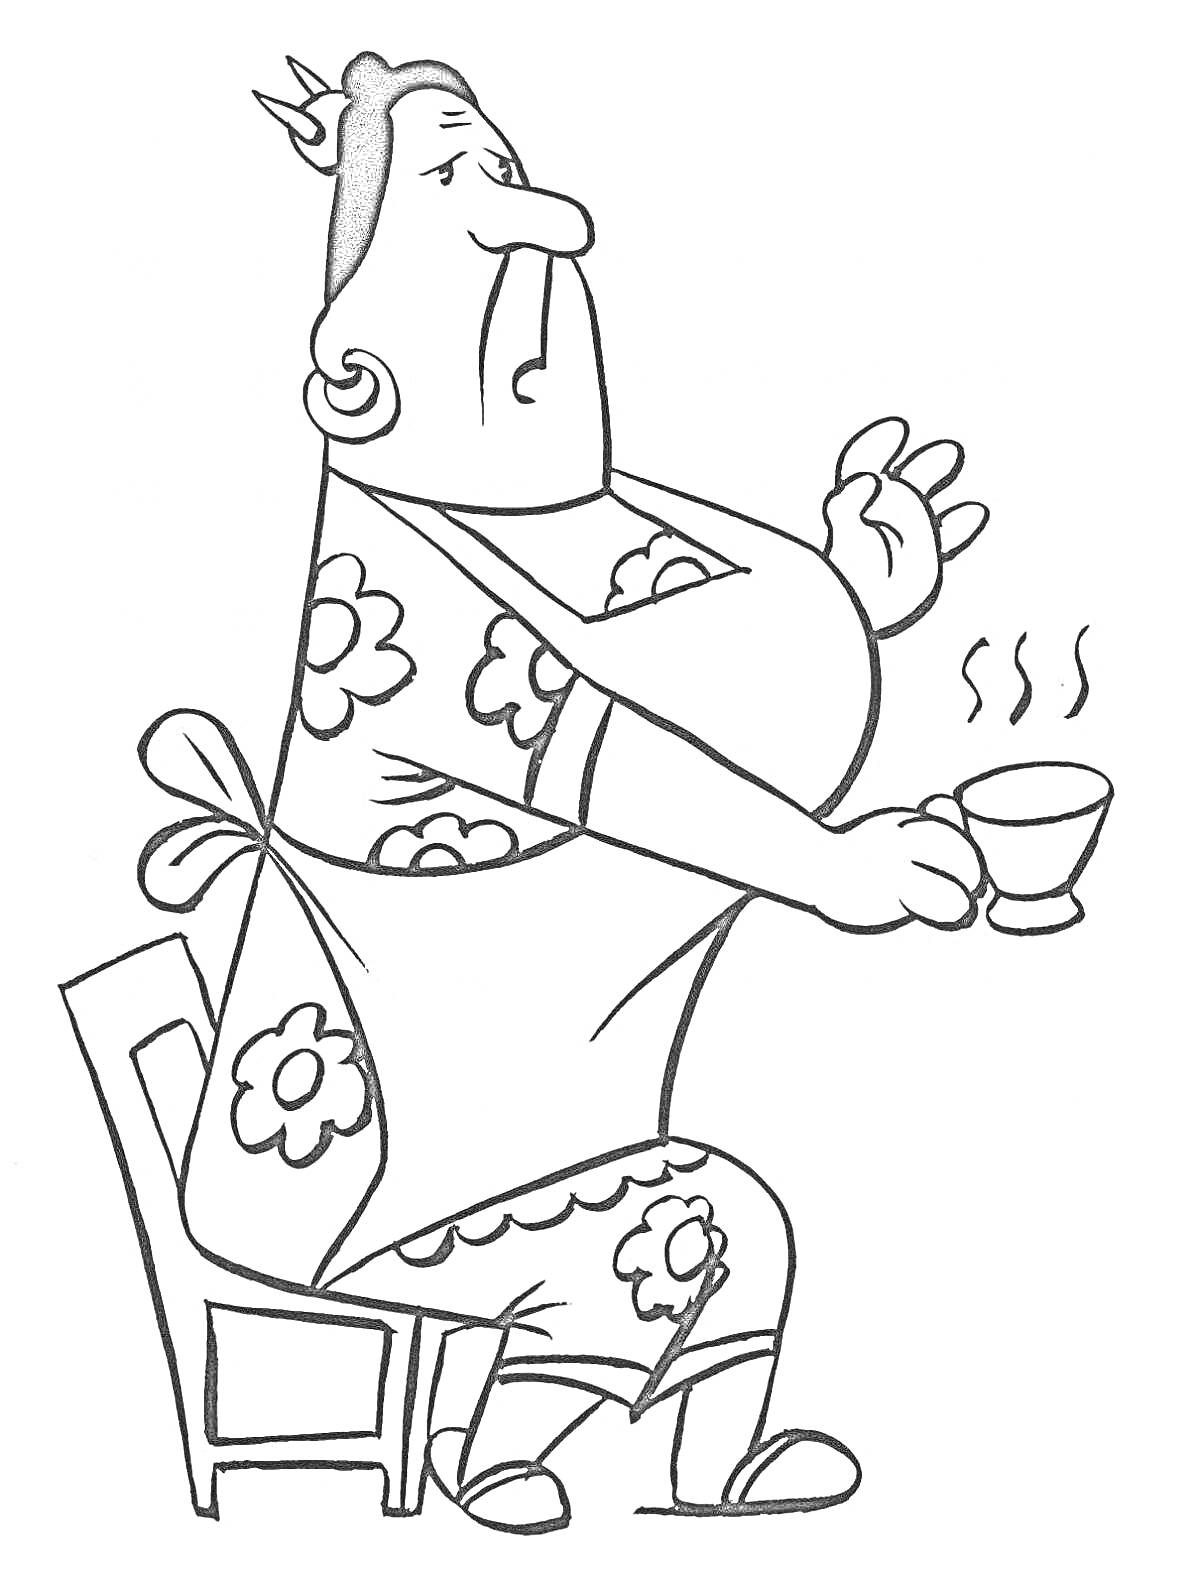 Раскраска Женщина в платье с цветочным узором сидит на стуле и держит чашку с горячим напитком